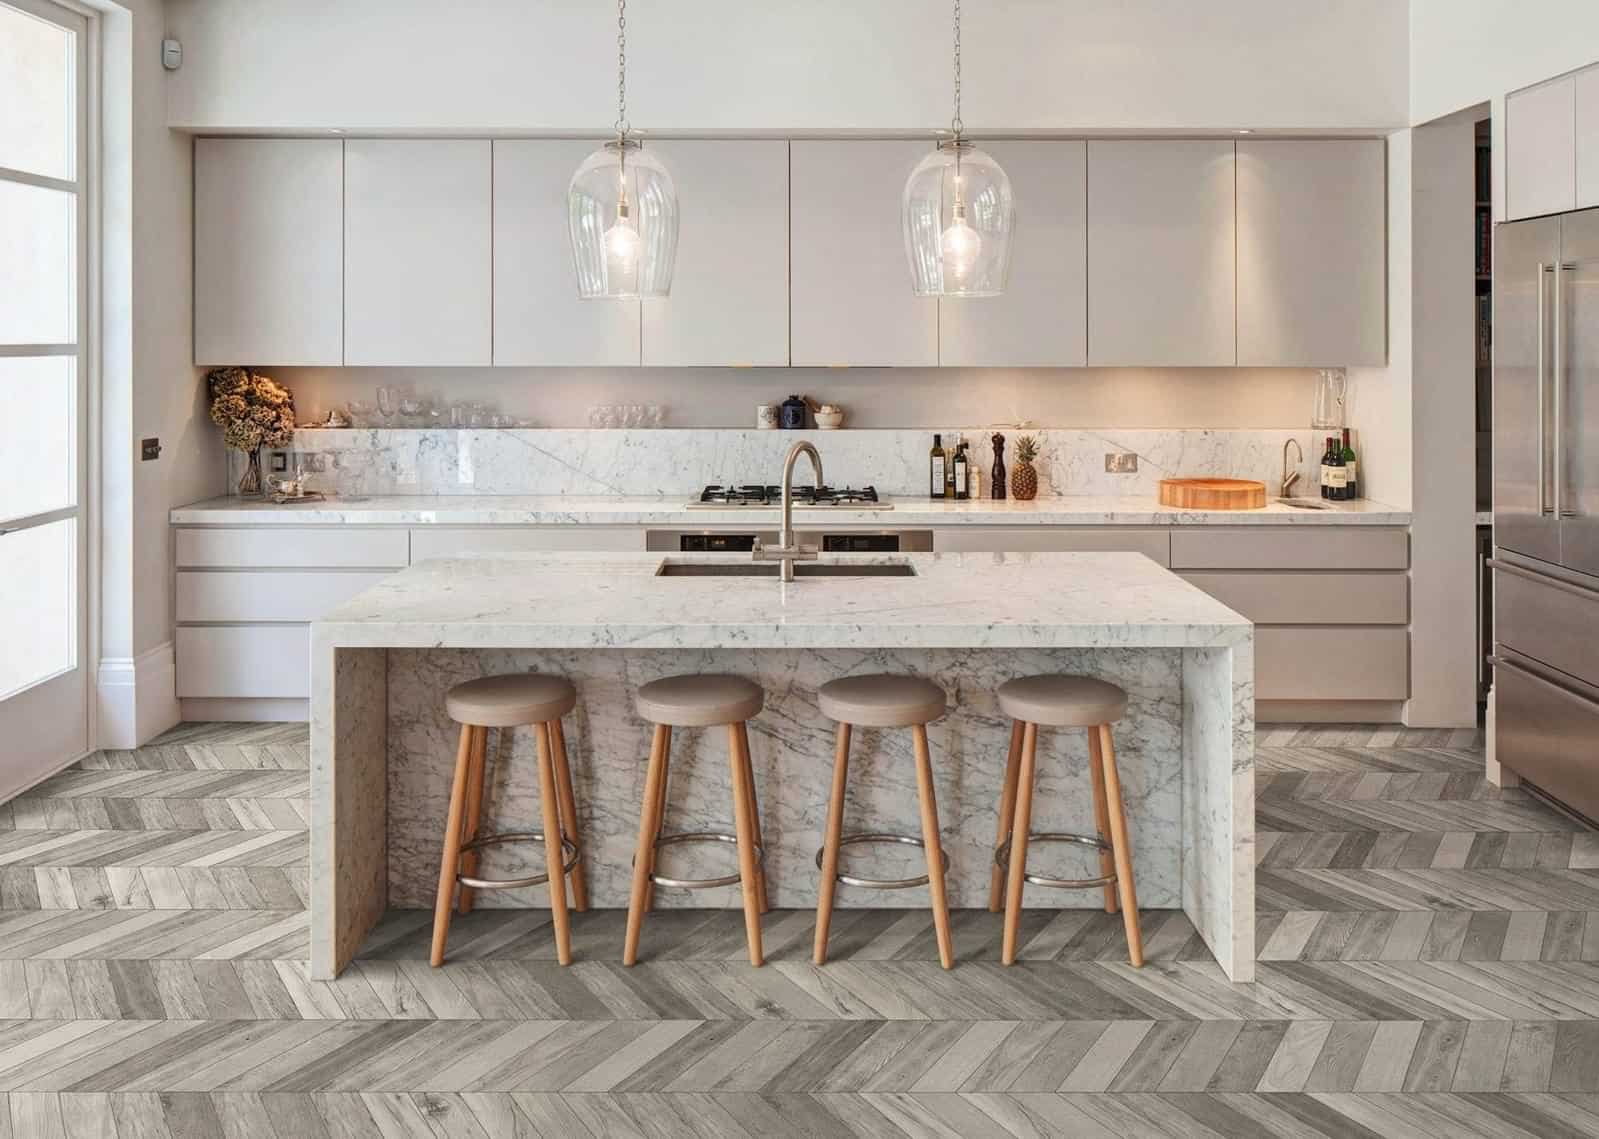 Parquet wood flooring in open plan kitchen with island